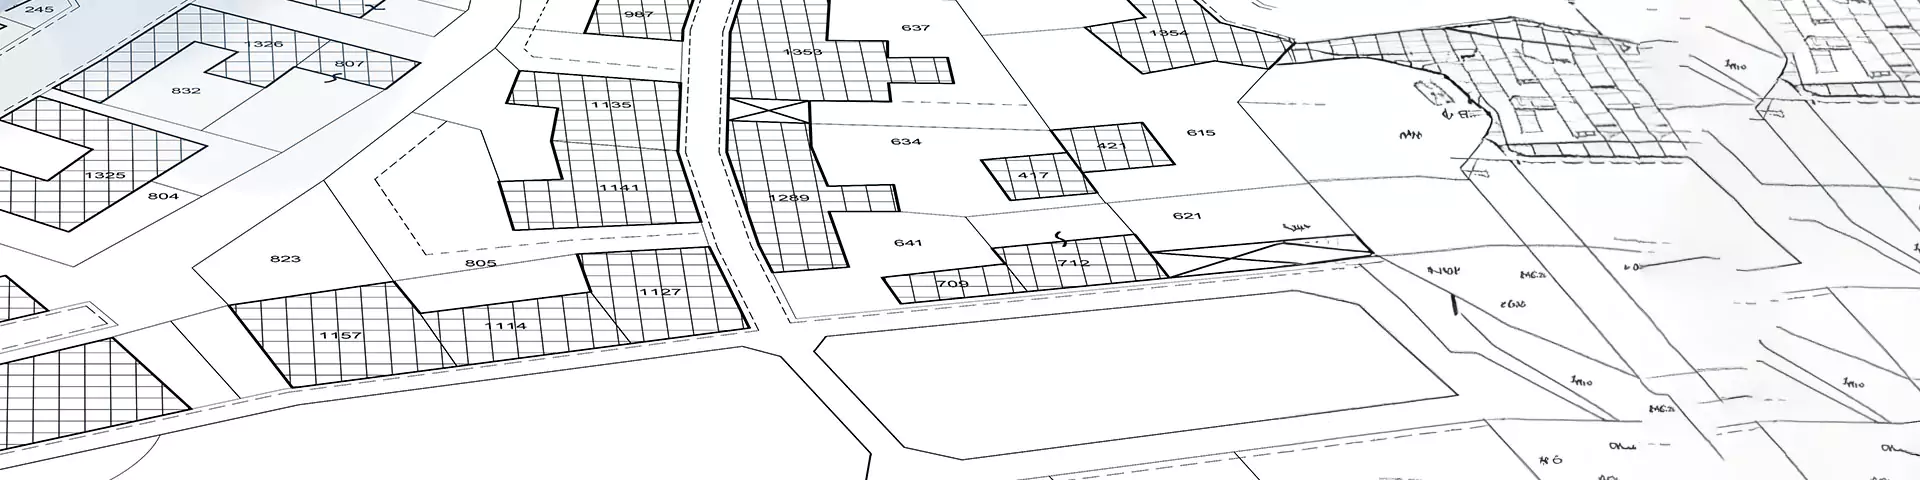 Bildkartierung mit Gebäuden, Grundstücken und frei stehenden Grundstücken - Grundbucheintragungen und Grundbucheintragungskonzept 